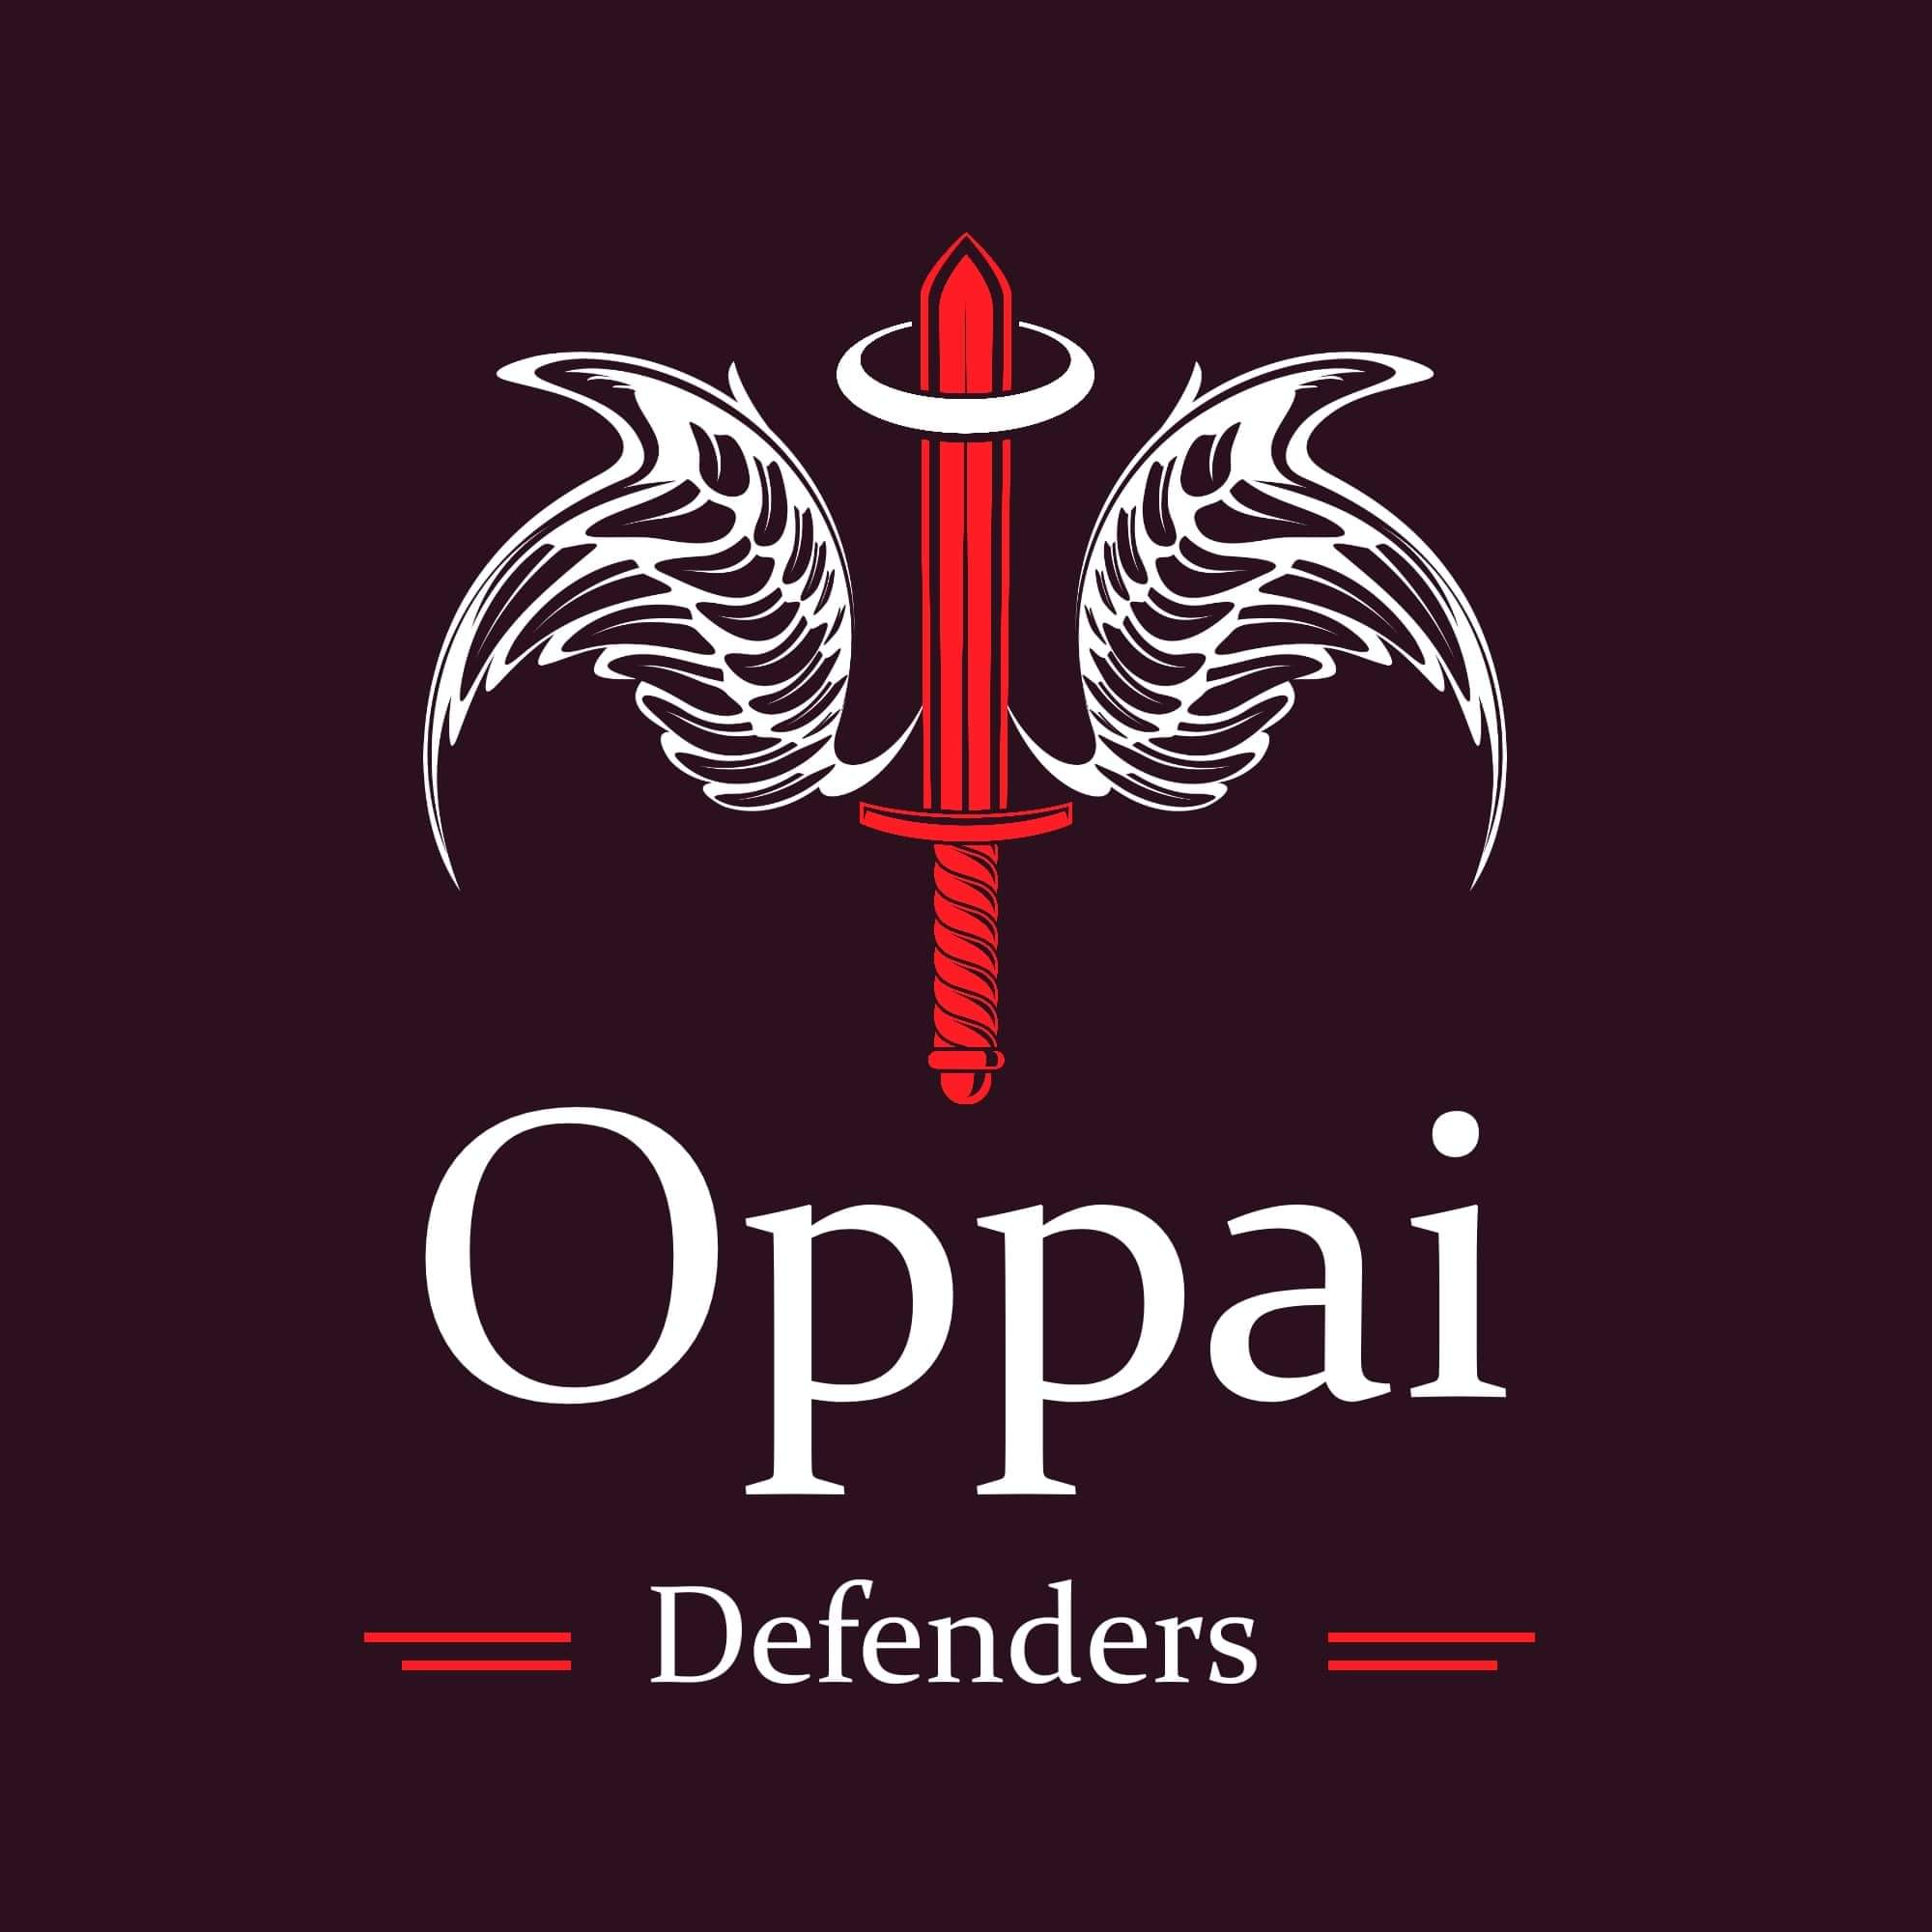 OPPAI DEFENDERS